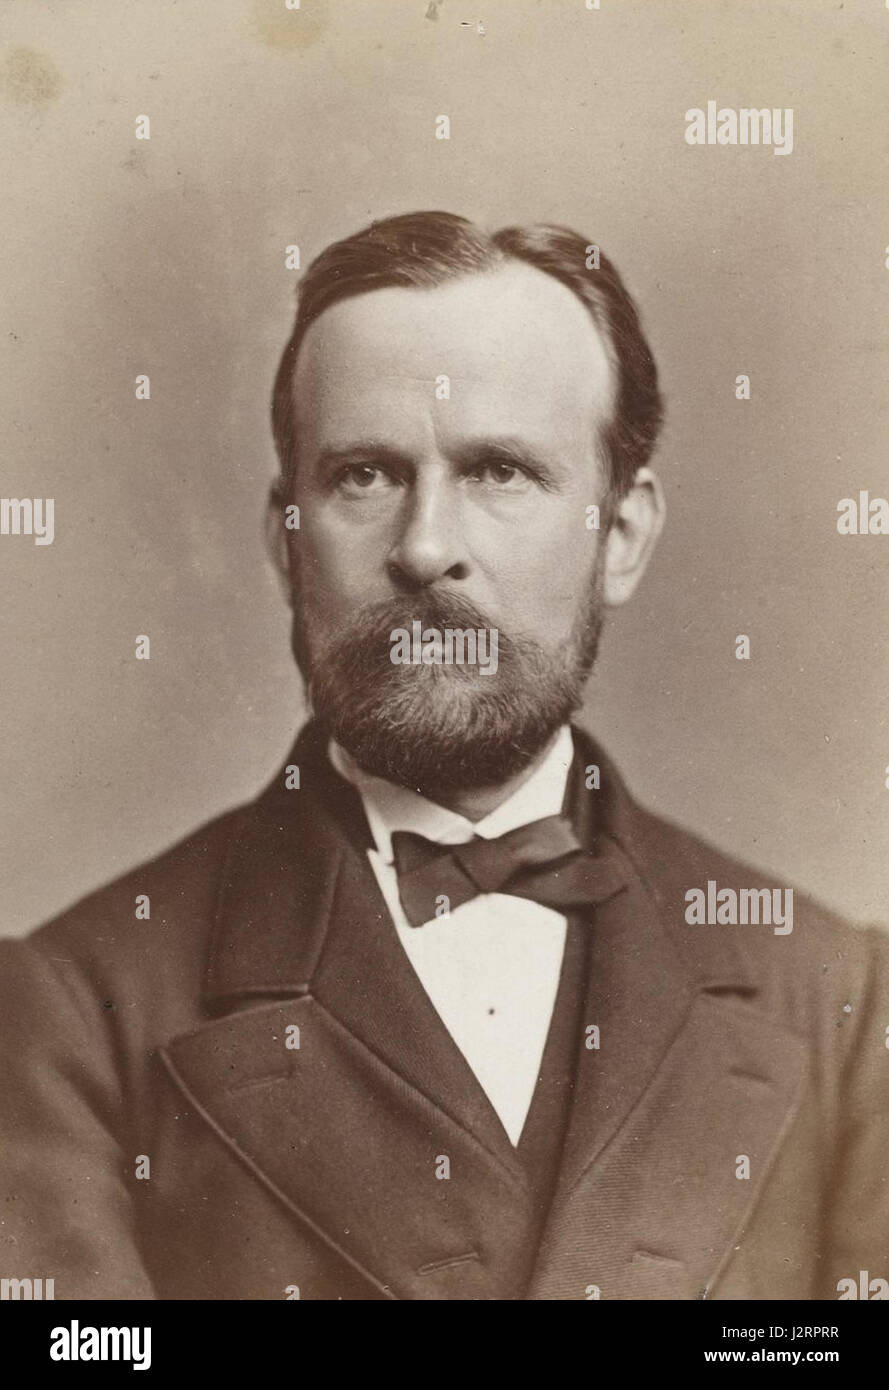 Ferdinand von Richthofen, 1880. Besser bekannt als Baron von Richthofen, war ein deutscher Reisender, Geograf und Wissenschaftler. Er ist bekannt dafür, dass er 1877 die Begriffe Seidenstraße und Seidenstraße prägte Stockfoto